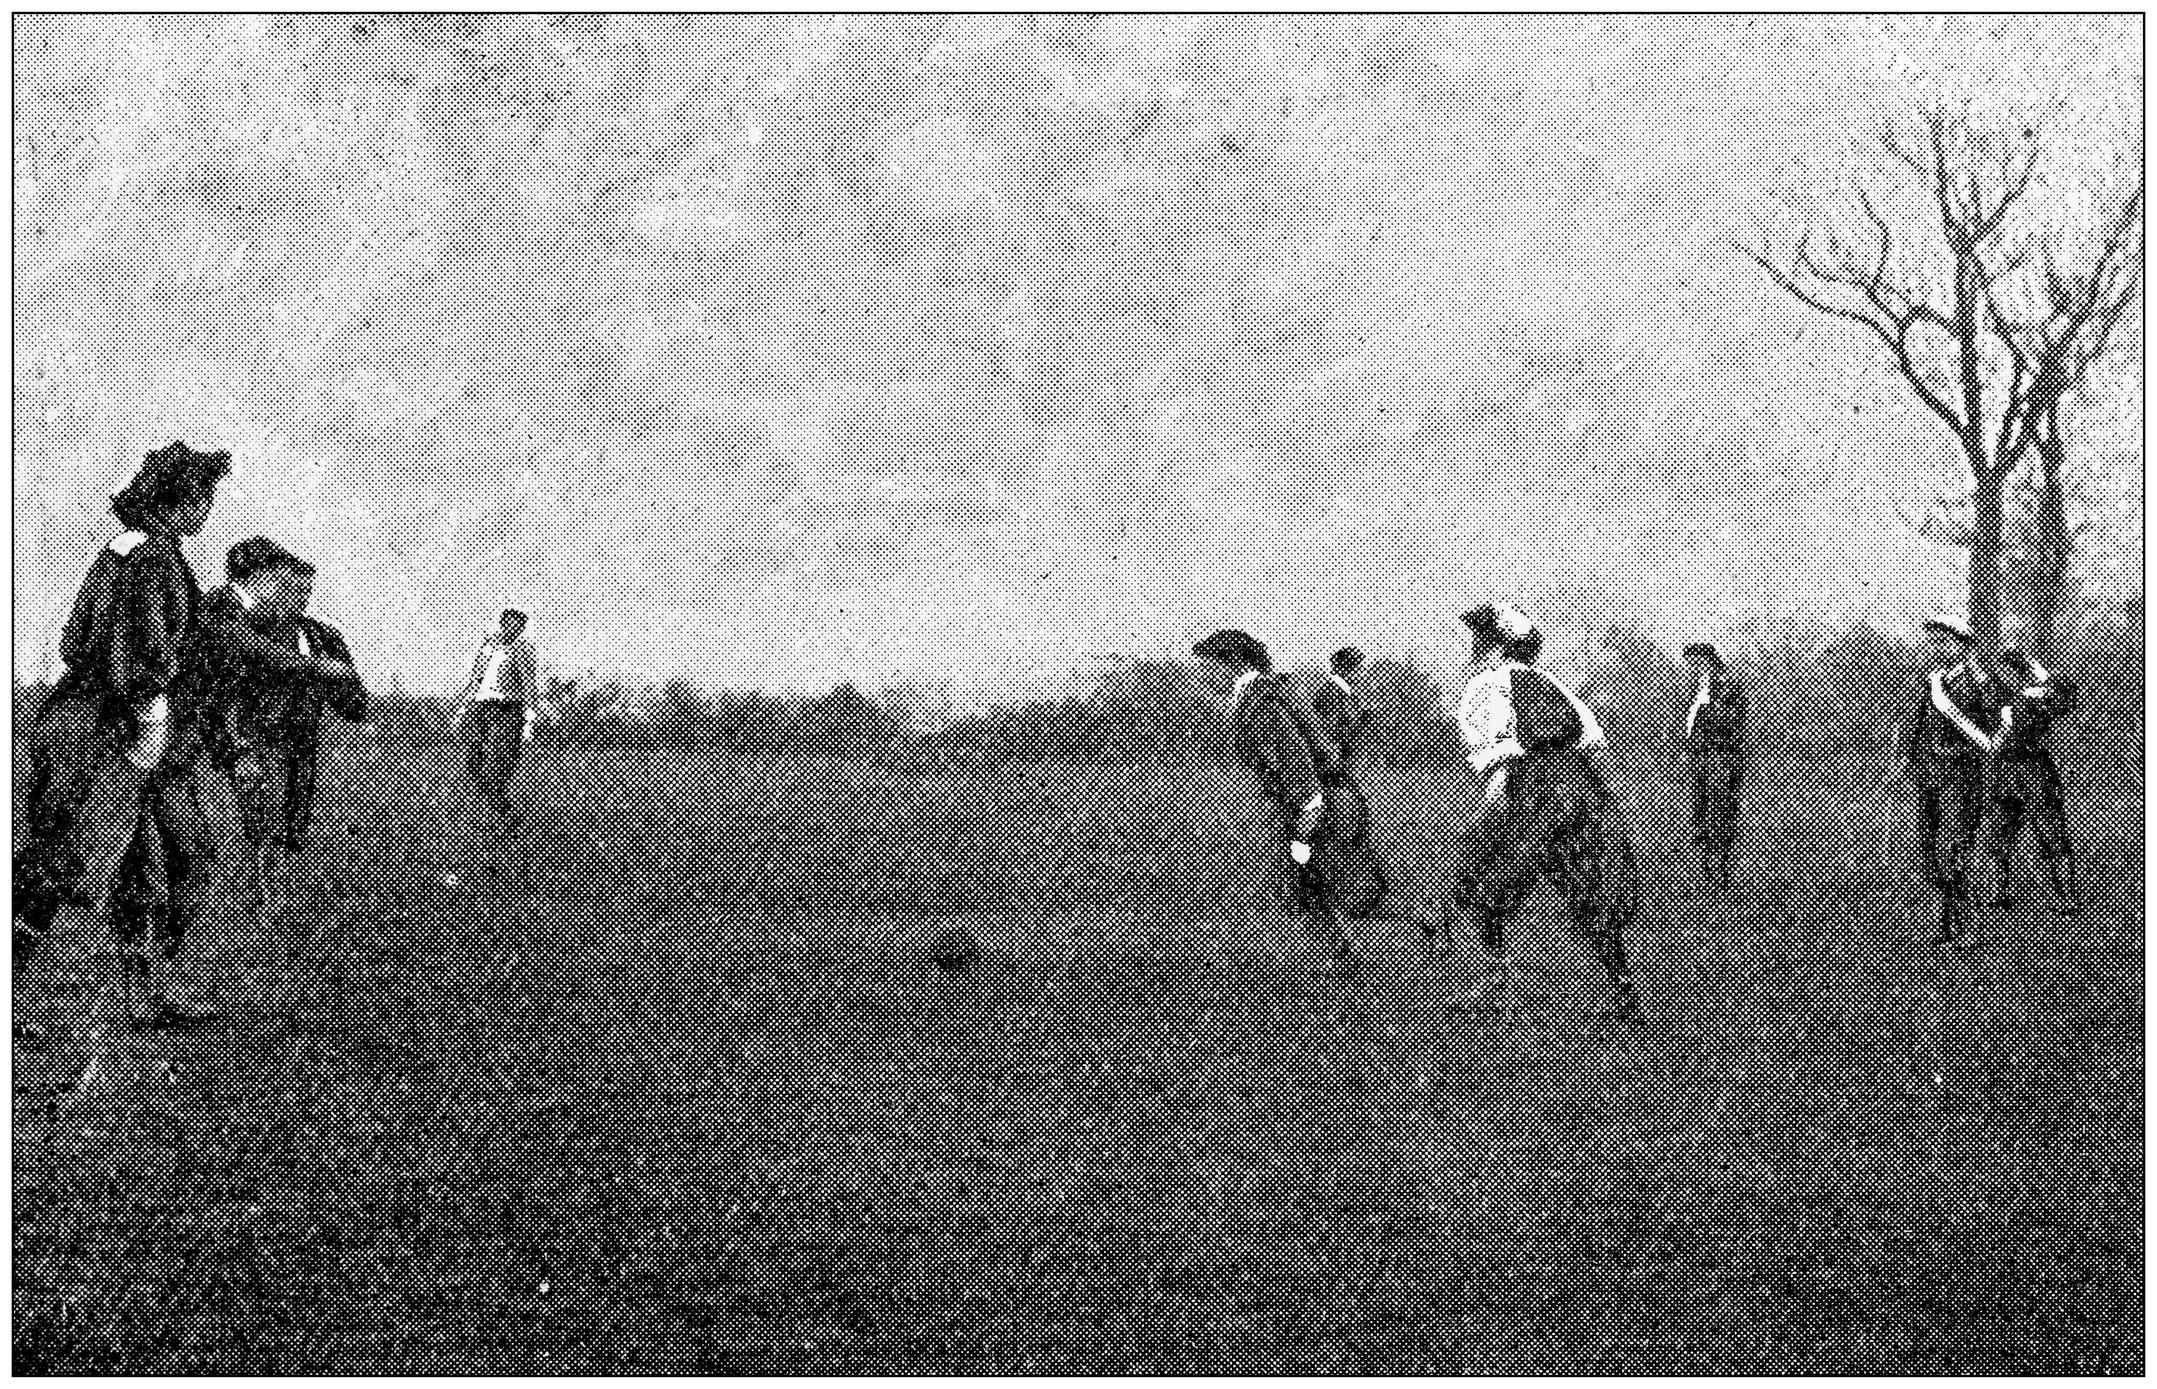 Ilustración de mujeres victorianas jugando fútbol en campo abierto.